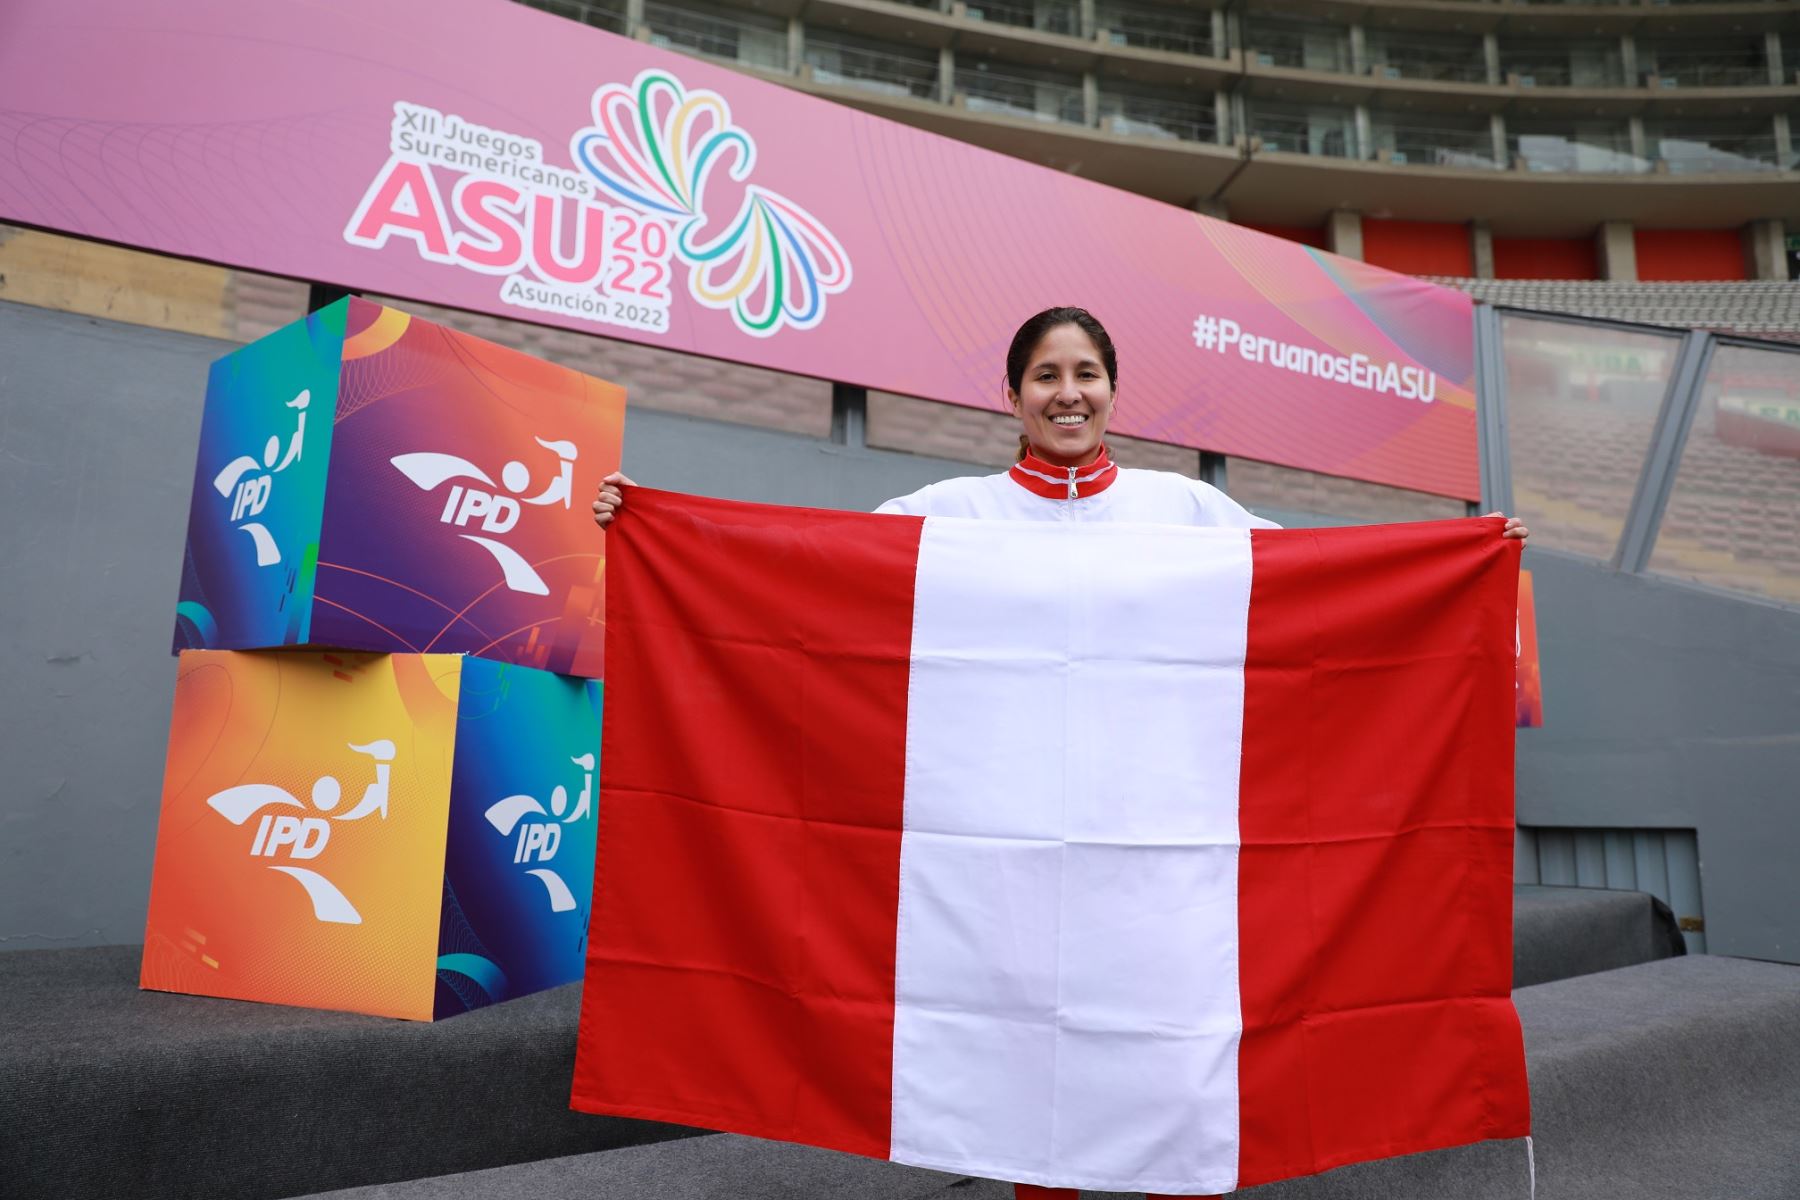 Alexandra Grande portará la bandera peruana en la inauguración de los Juegos Suramericanos Asunción 2022